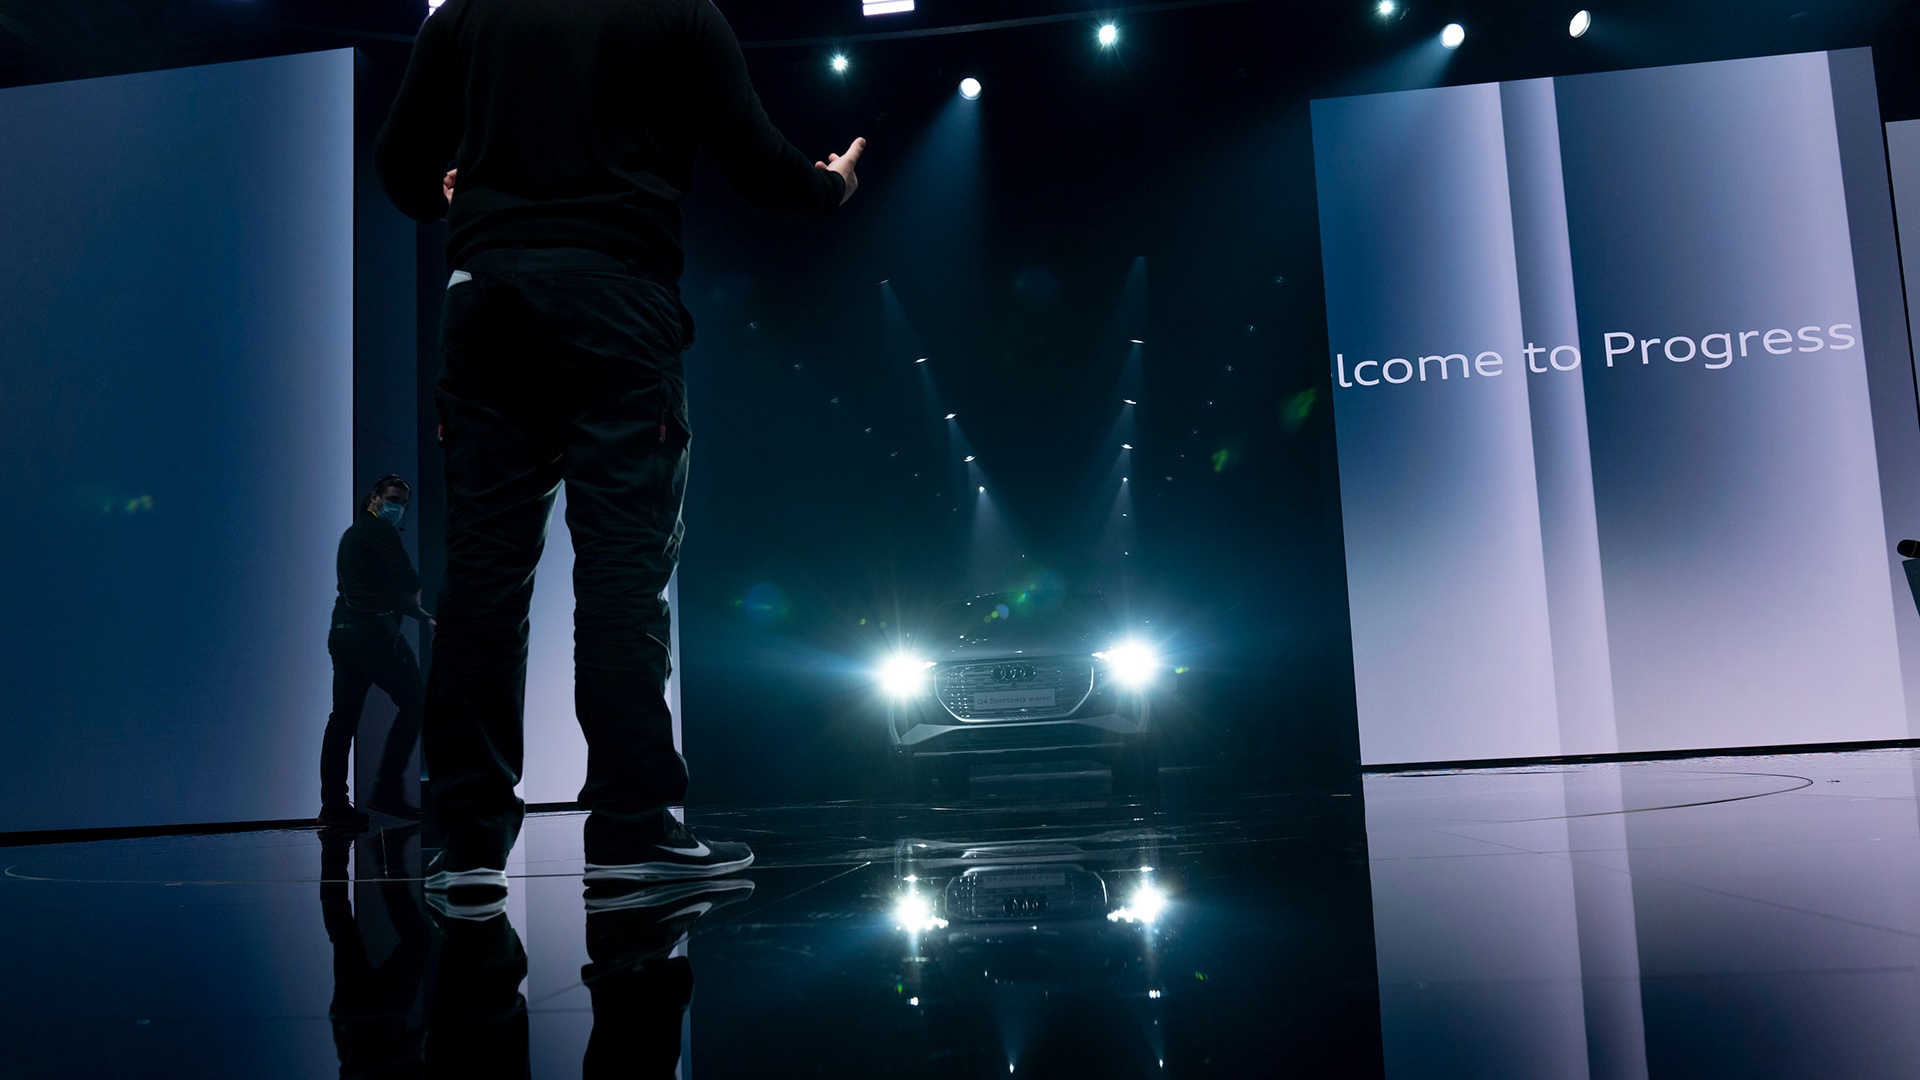 Občinstvo je čakalo trenutek svetovne premiere 14. aprila: oder je pripravljen na vstop Audija Q4 e-tron.